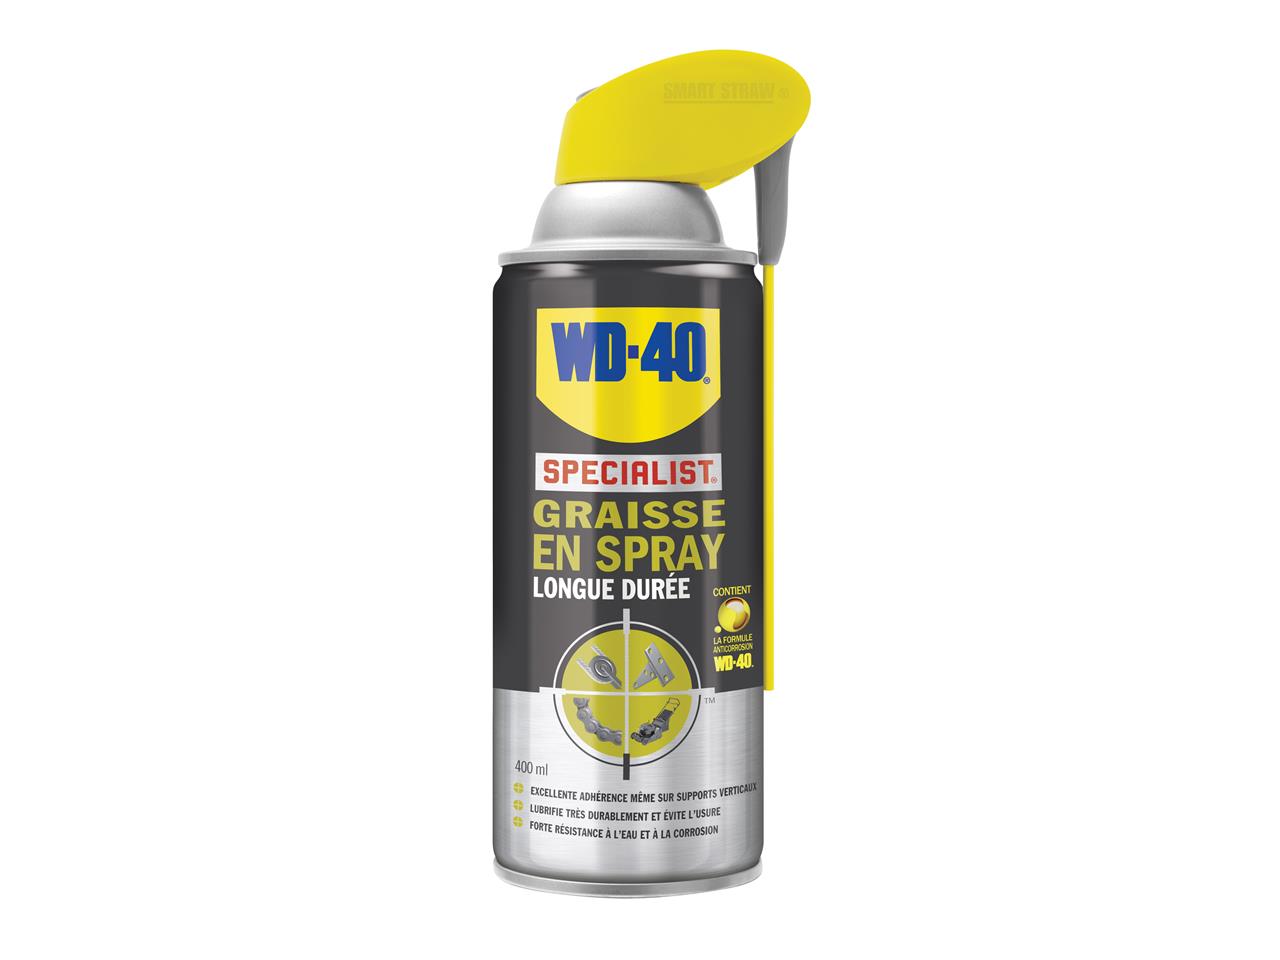 Graisse en spray WD-40 Specialist® longue durée